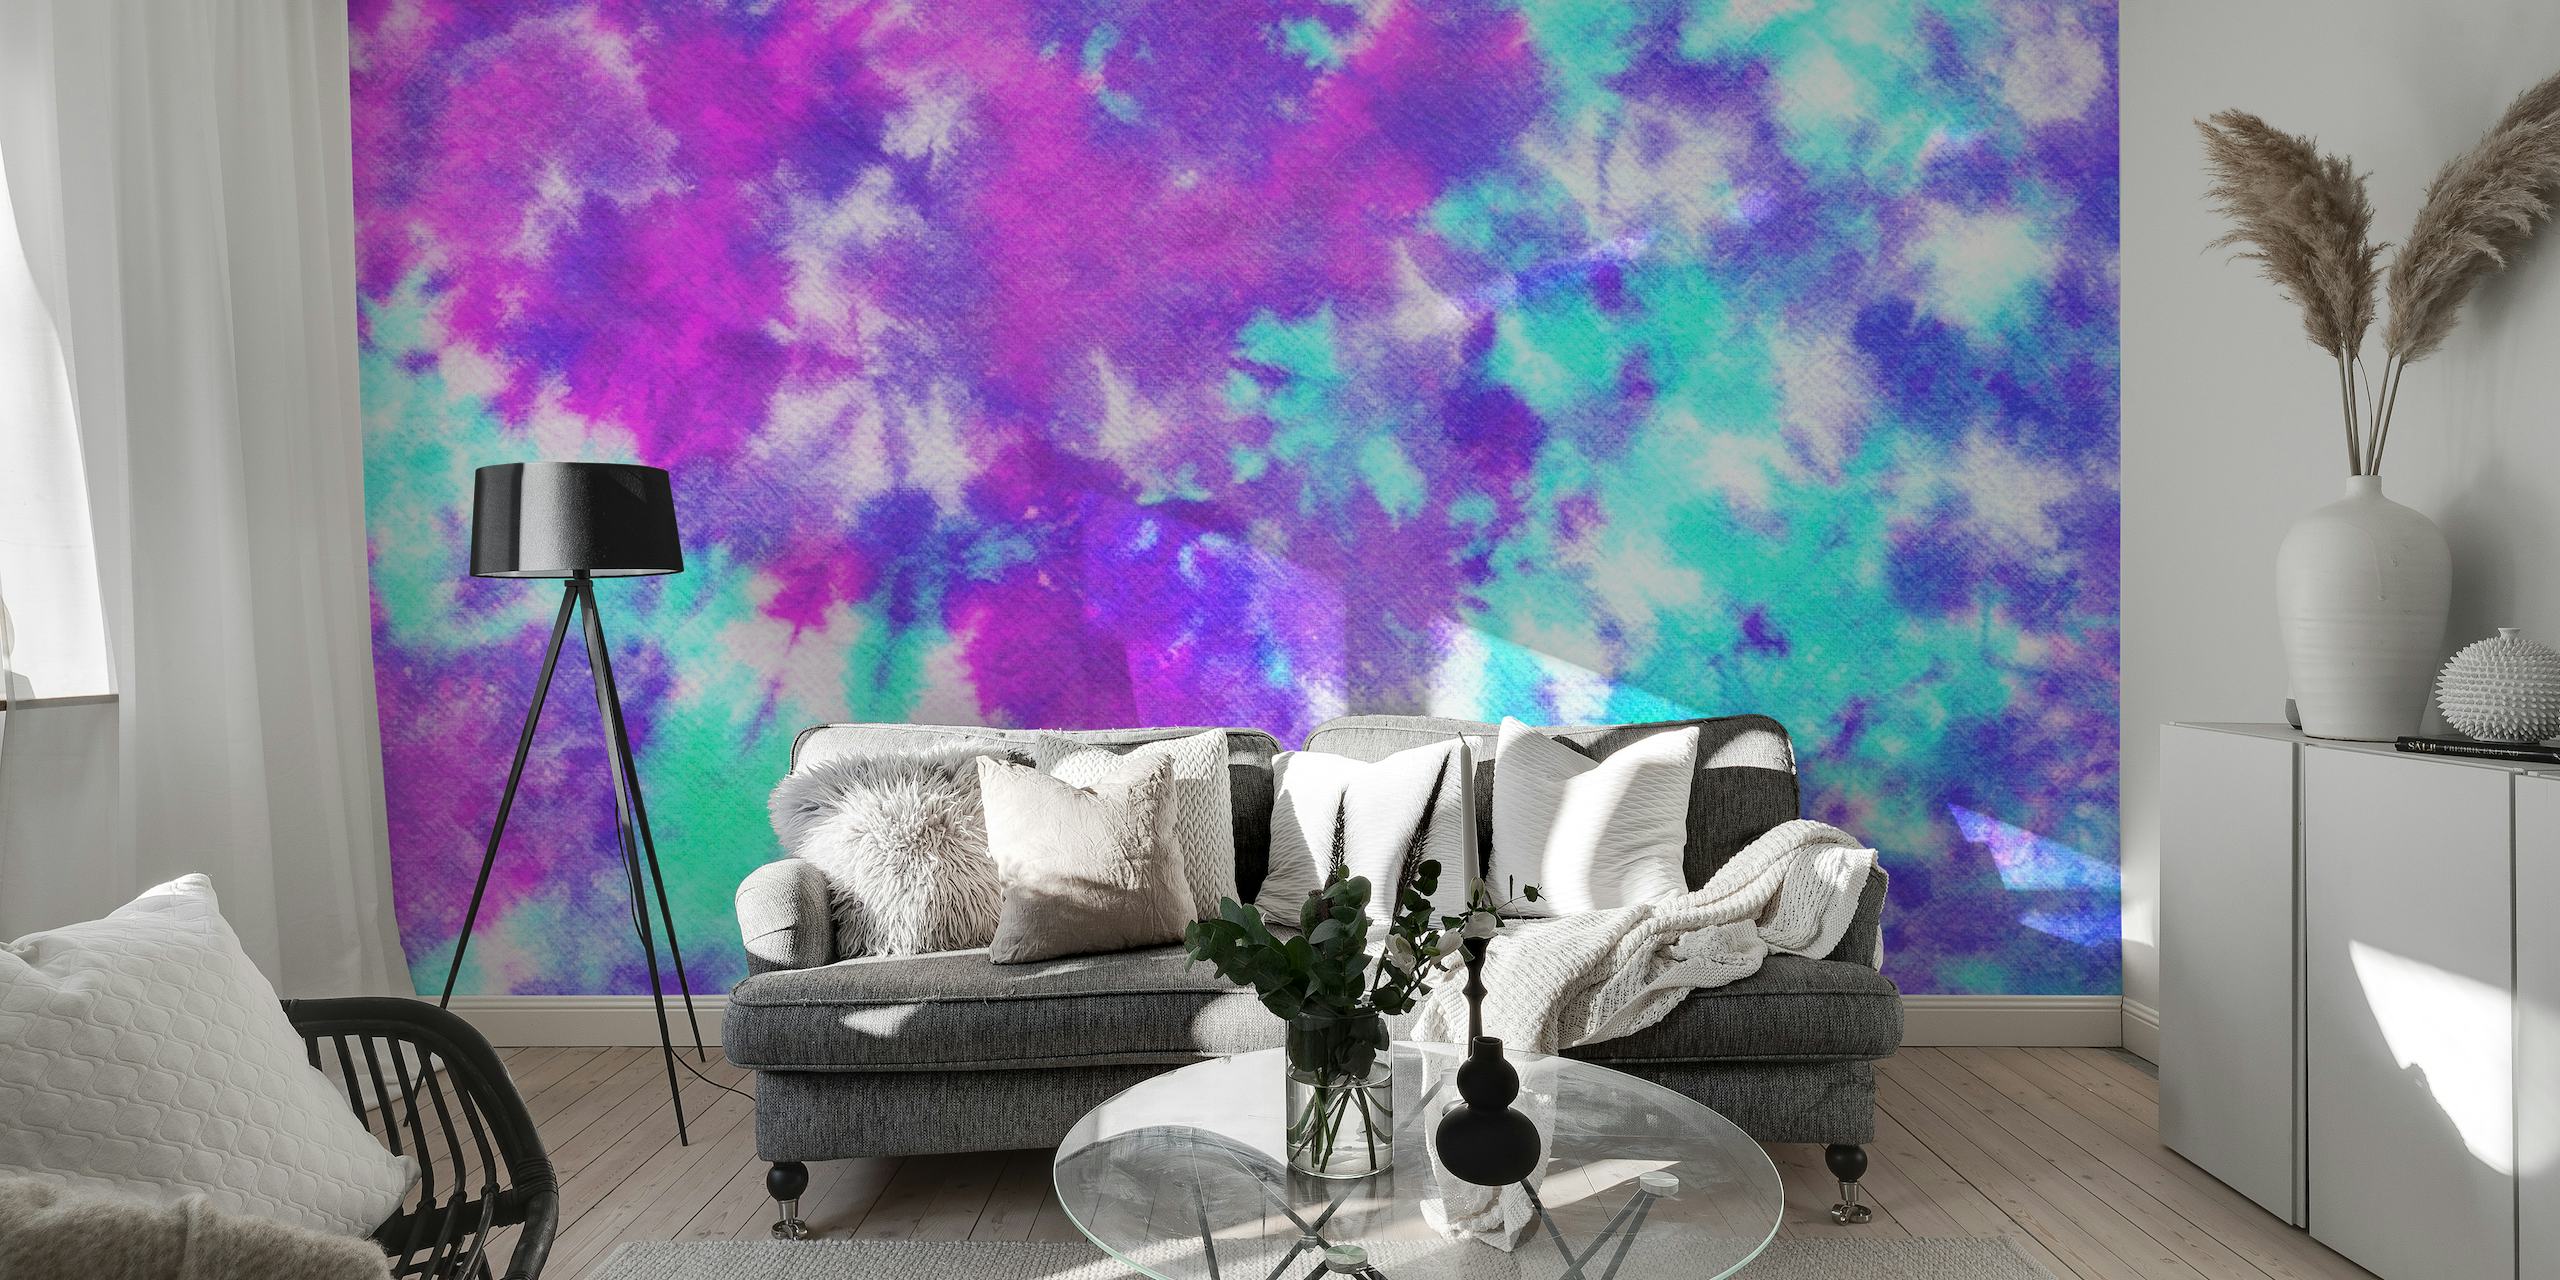 Kleurrijke muurschildering met tie-dye-patroon in de kleuren paars, roze en blauw voor interieurdecoratie